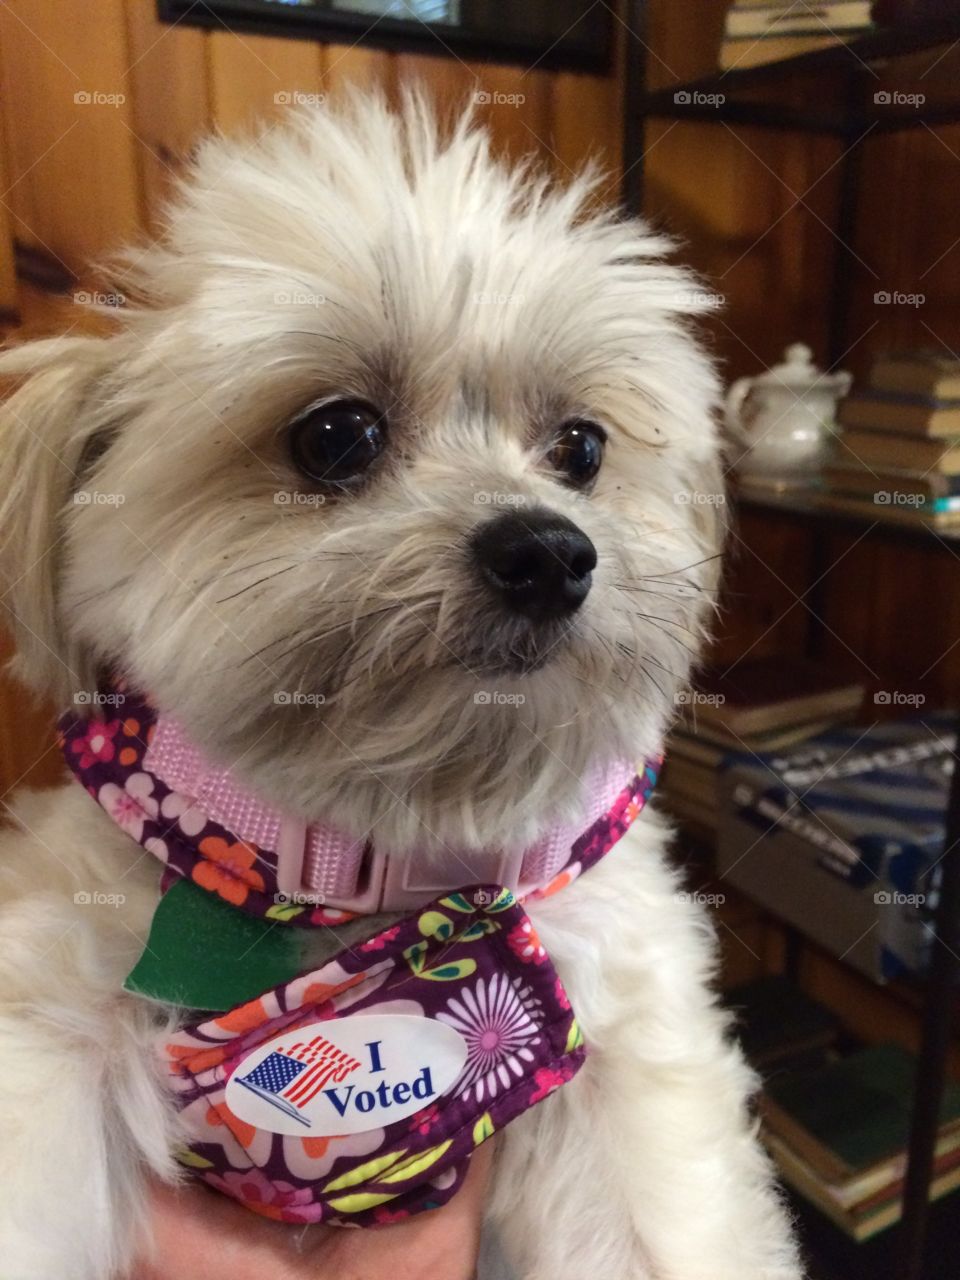 Bella voted